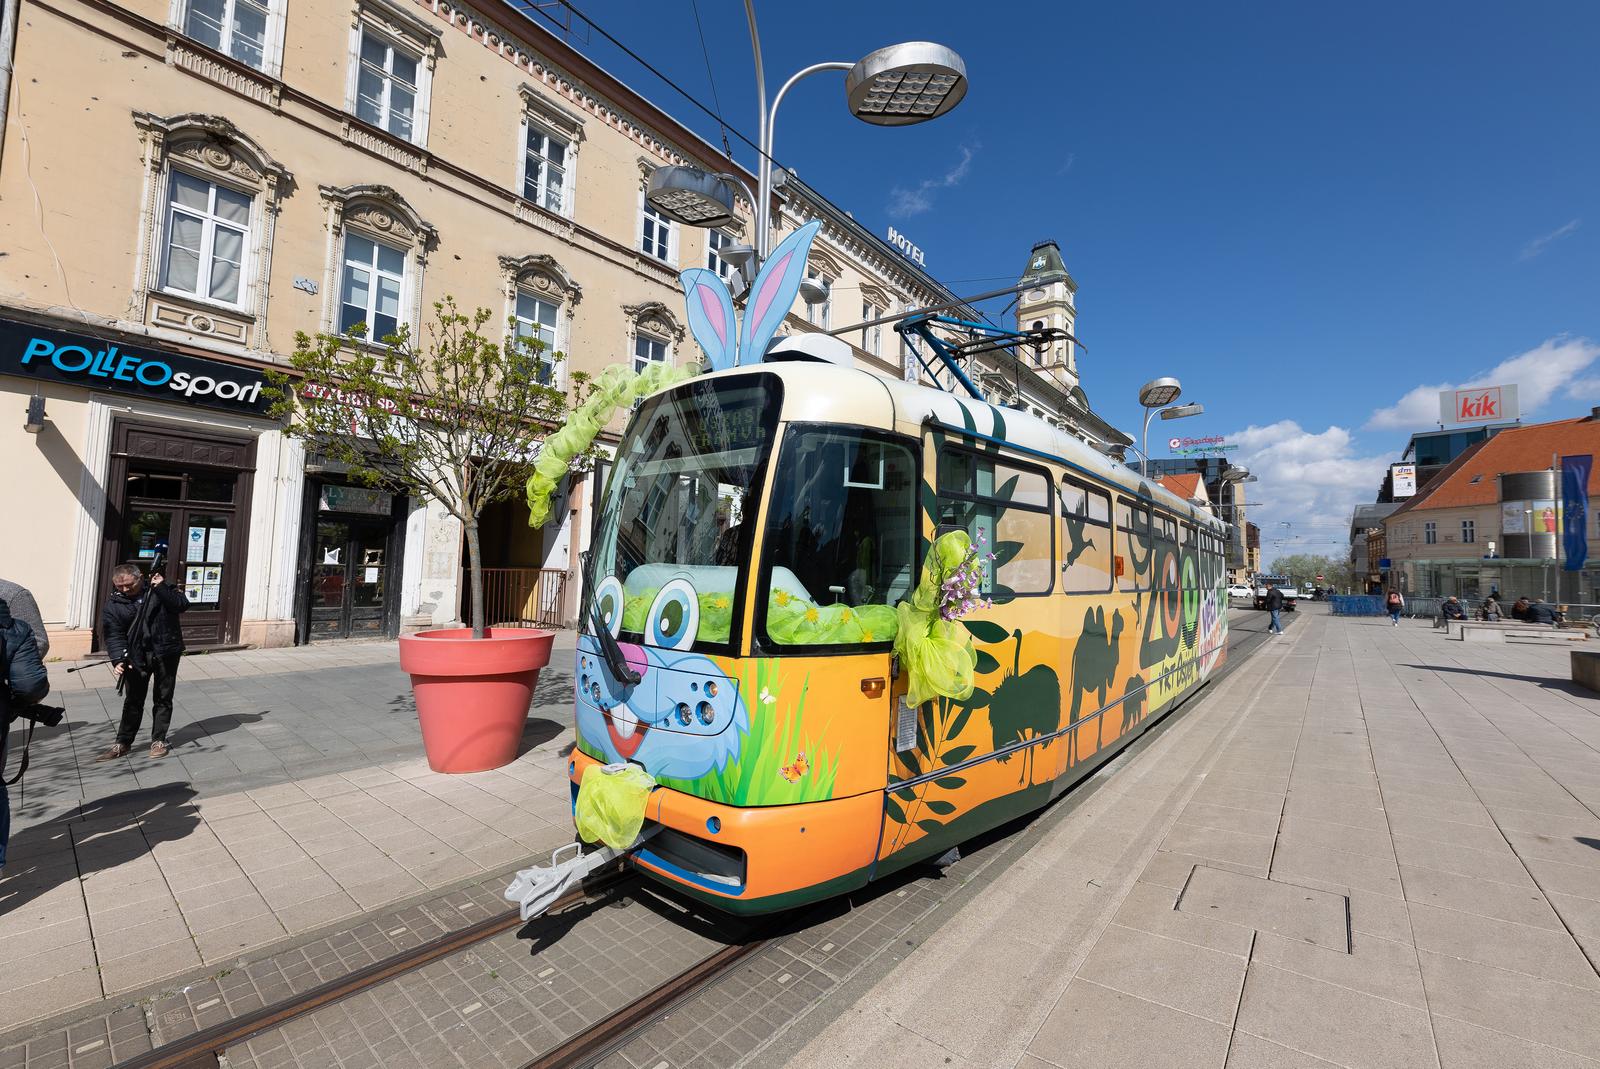 11.04.2022., Osijek - Djelatnici GPP-a uredili su tramvaj ususret Uskrsu te je gradonacelnik Ivan Radic najavio manifestaciju pod nazivom Uskrs u Osijeku.  Photo: Davor Javorovic/PIXSELL